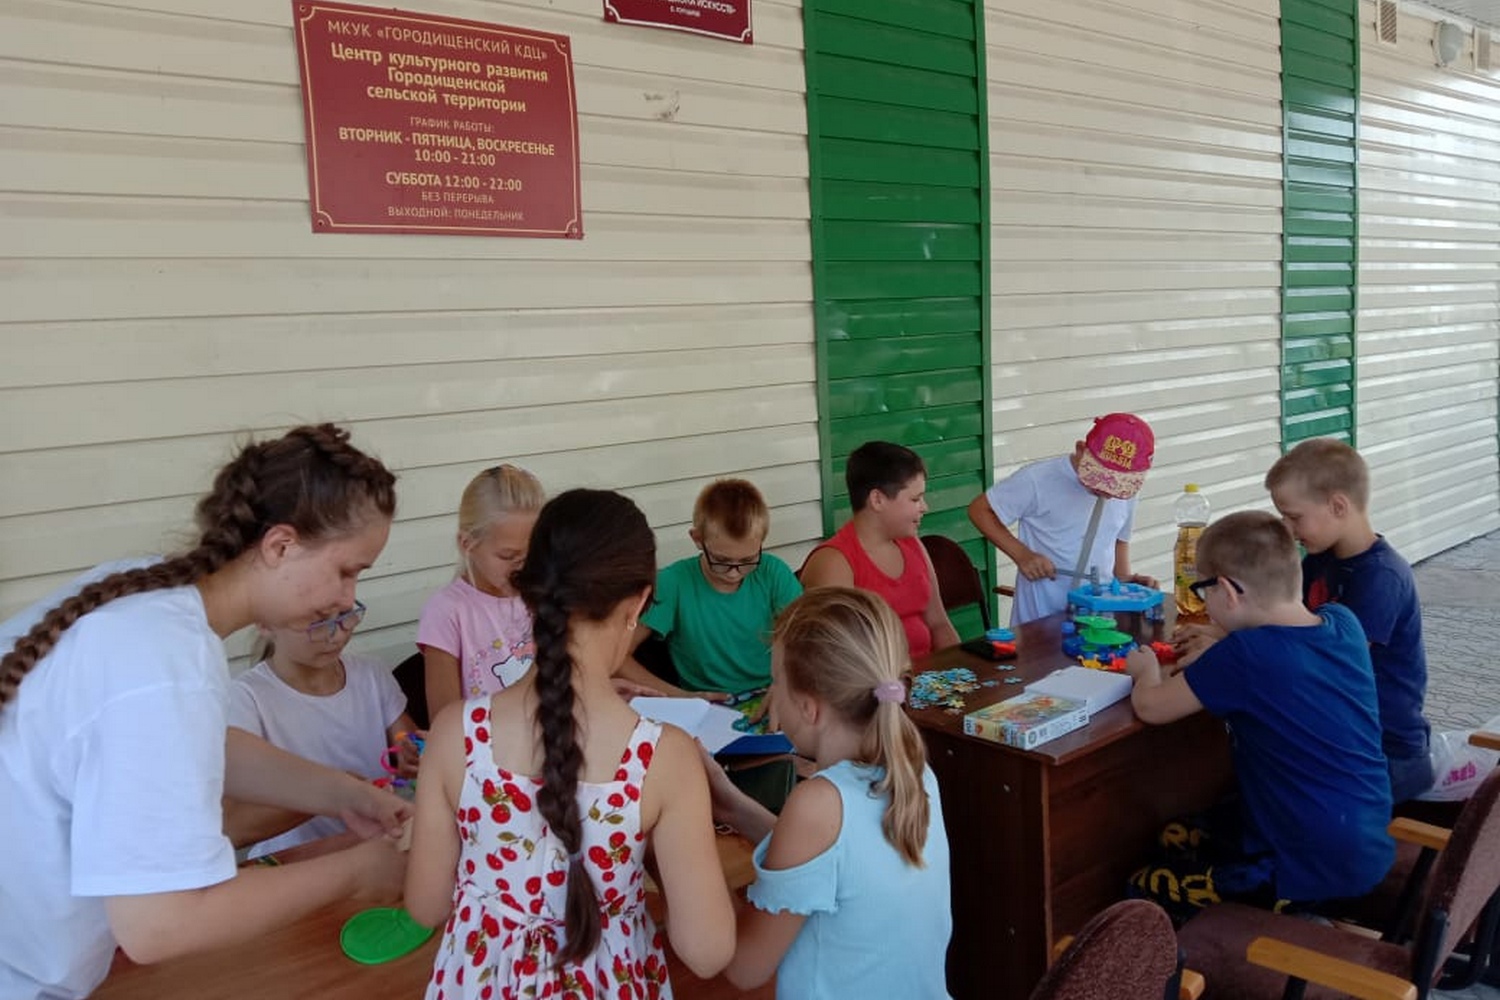 Фонд президентских грантов выделил 255 тысяч рублей на православную смену в старооскольском селе